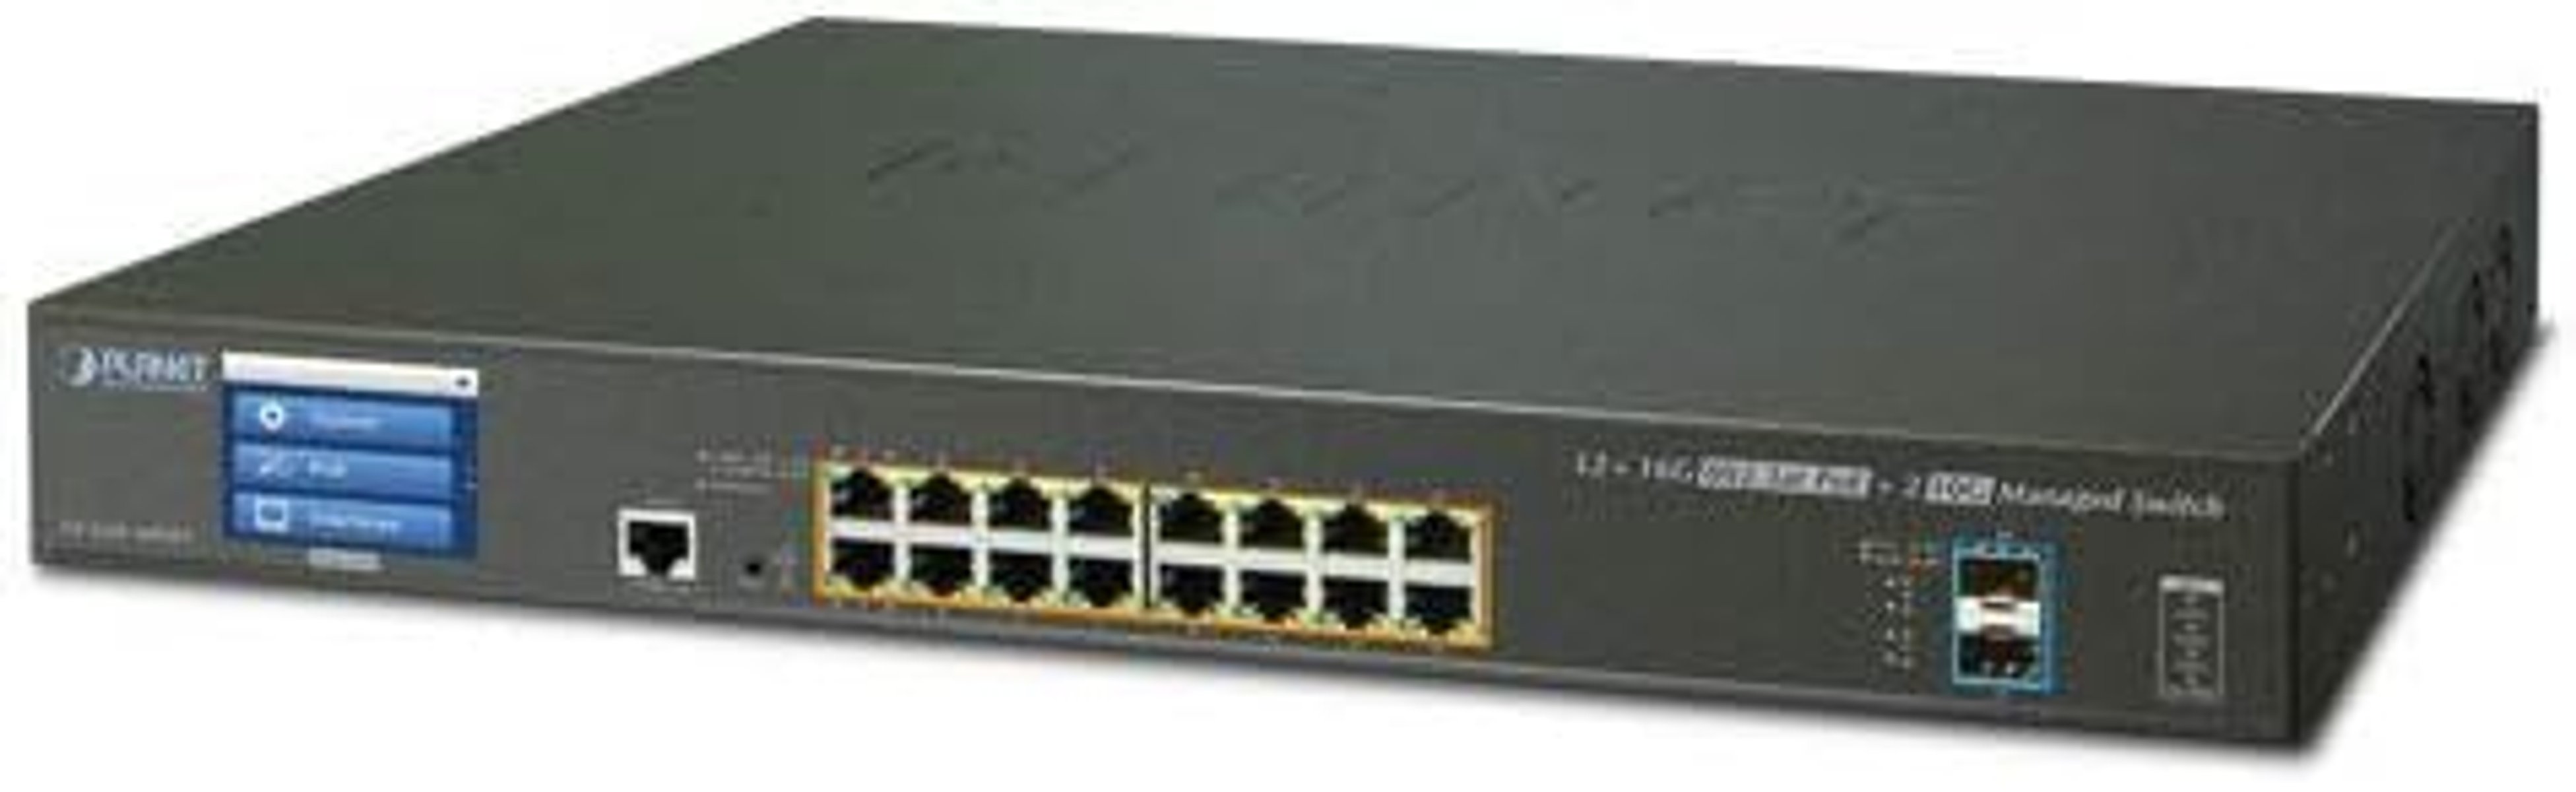 GS-5220-16P2XVR Switch Netzwerk ACER